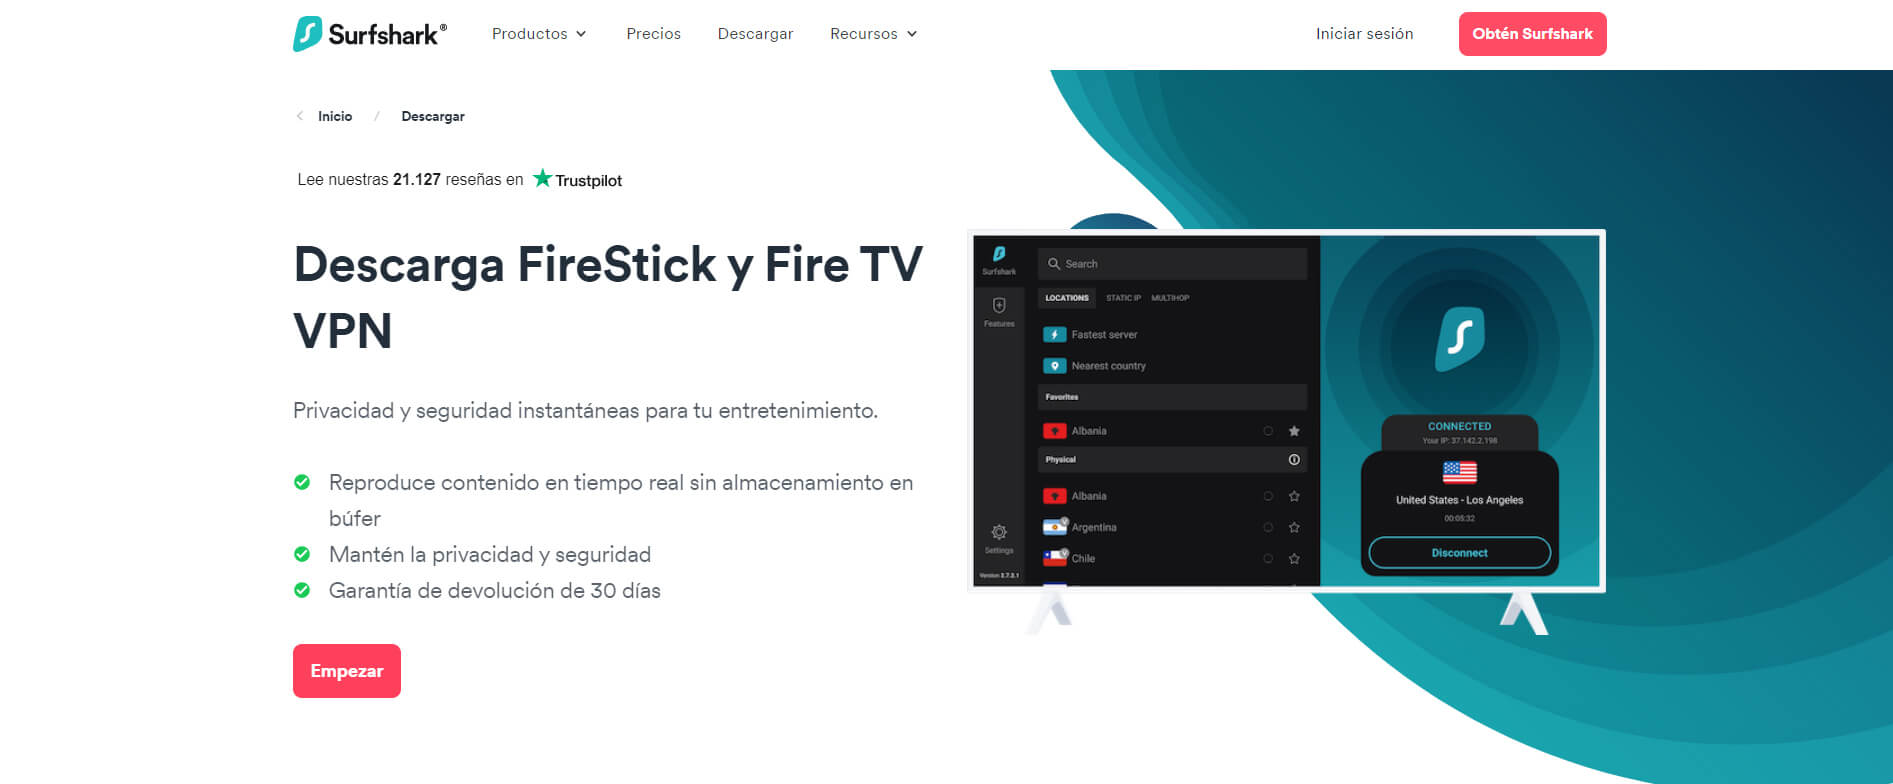 Surfshark FireStick VPN